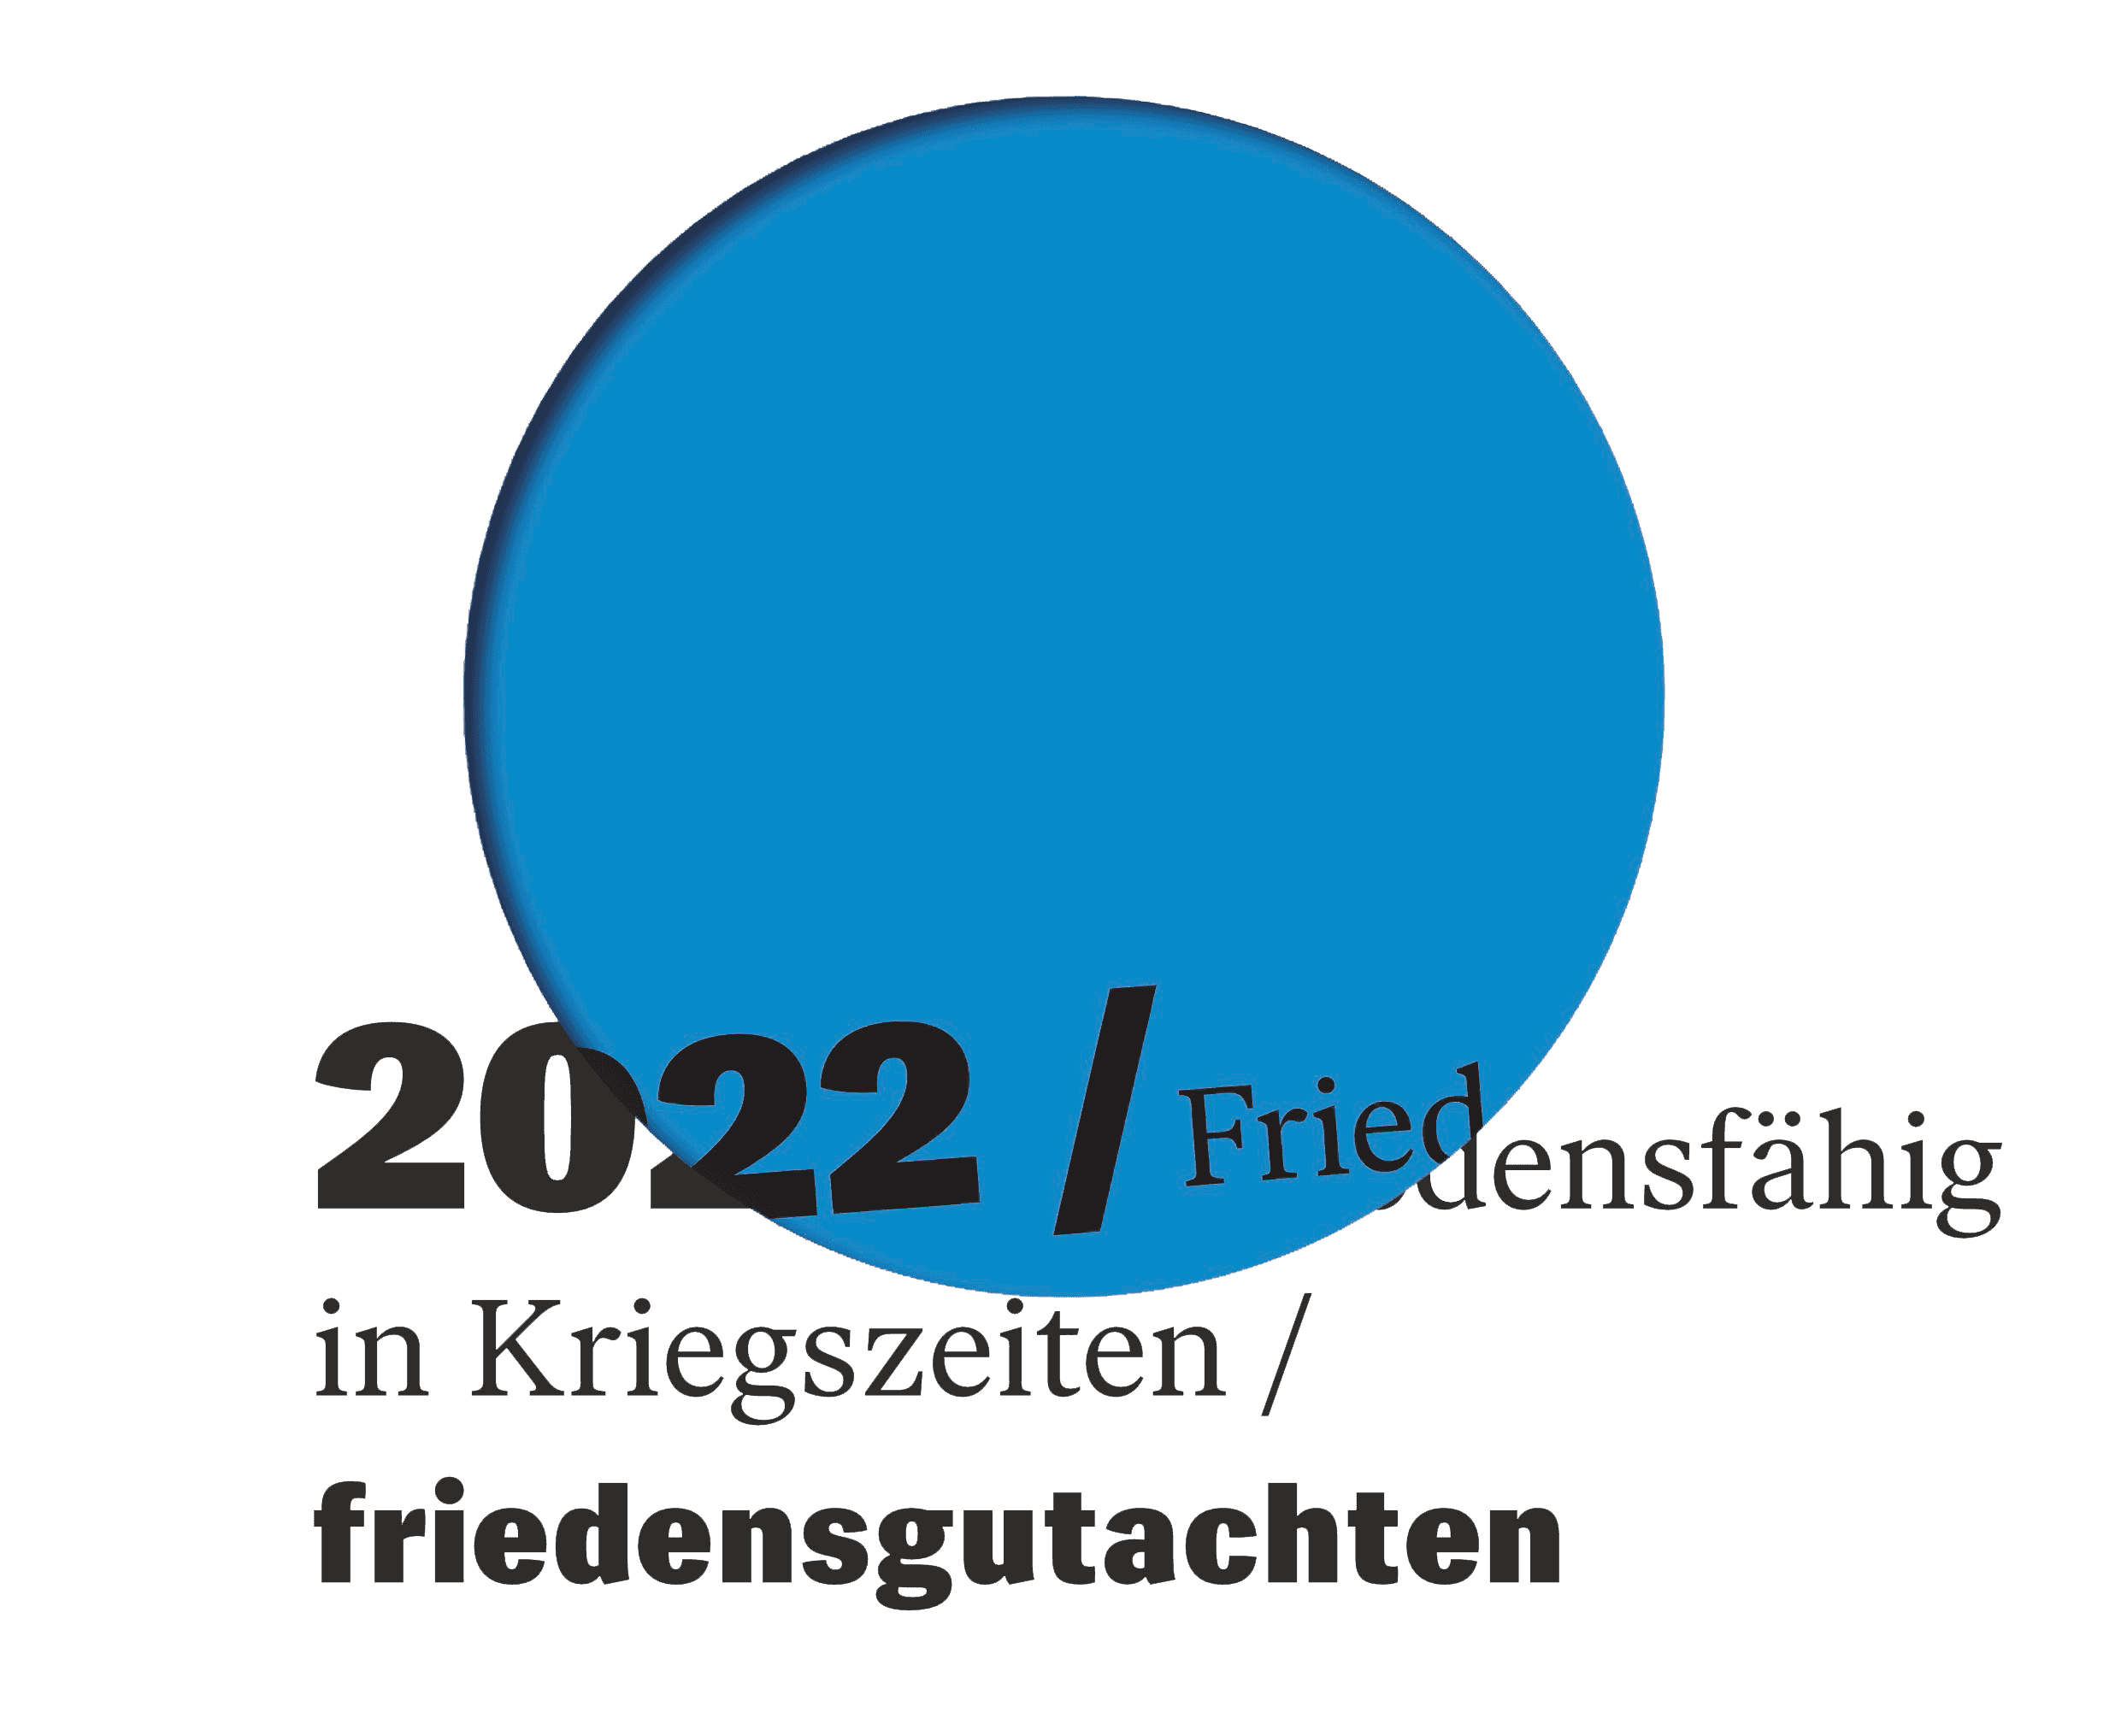 blauer Punkt mit Text: 2022 / Friedensfähig in Kriegszeiten / friedensgutachten